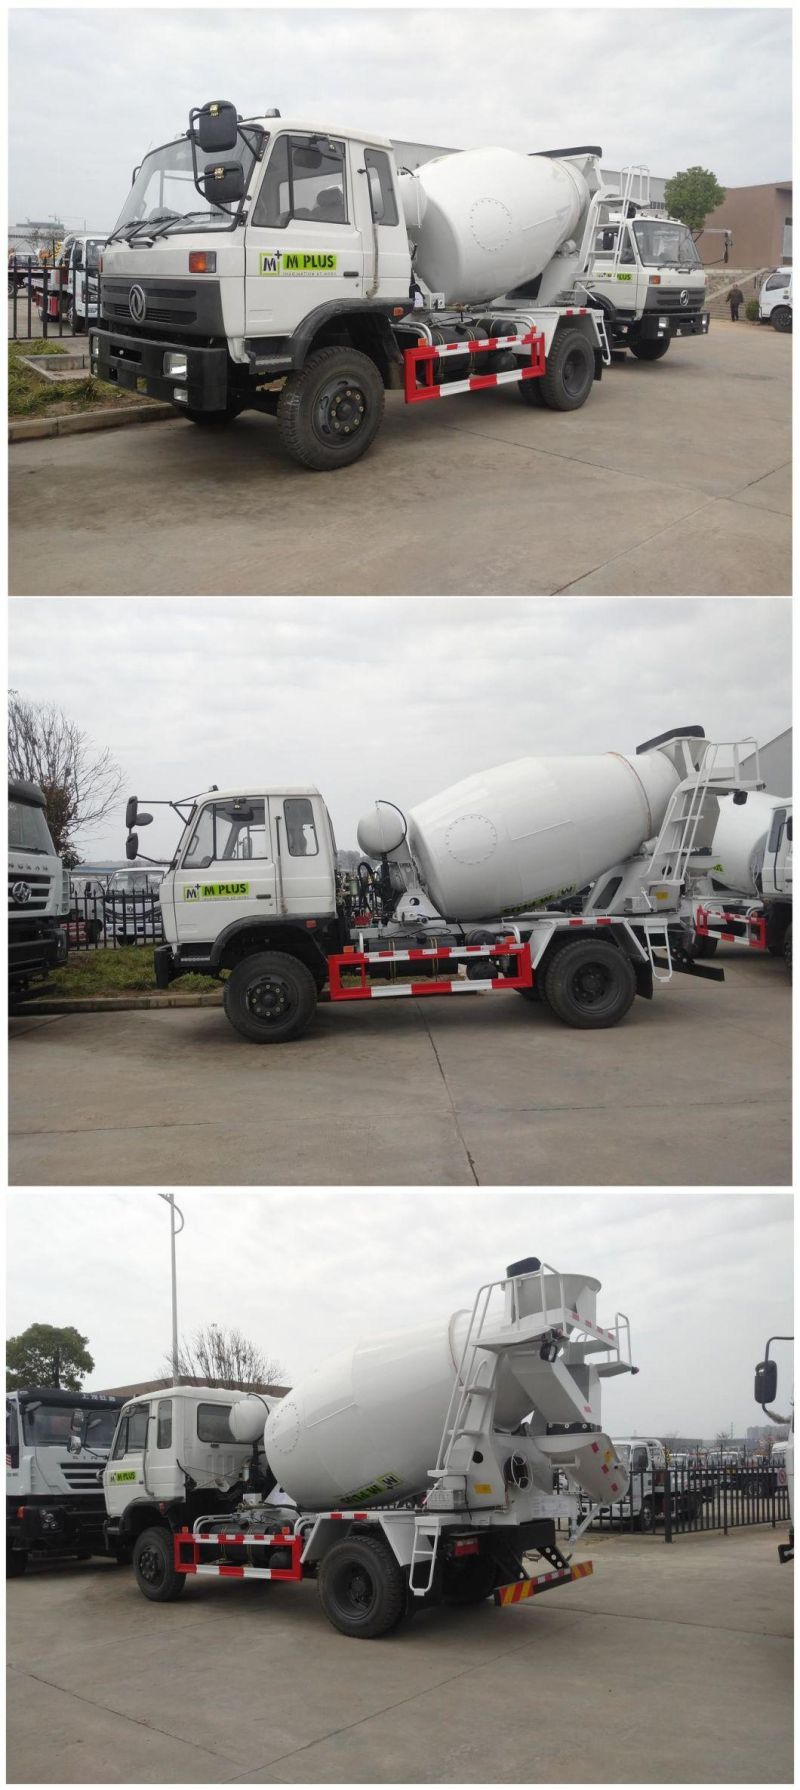 Dongfeng Concrete Mixer Mini Truck Concrete Mixer Truck Dimensions 3 Cubic Meters Concrete Mixer Truck for Sale